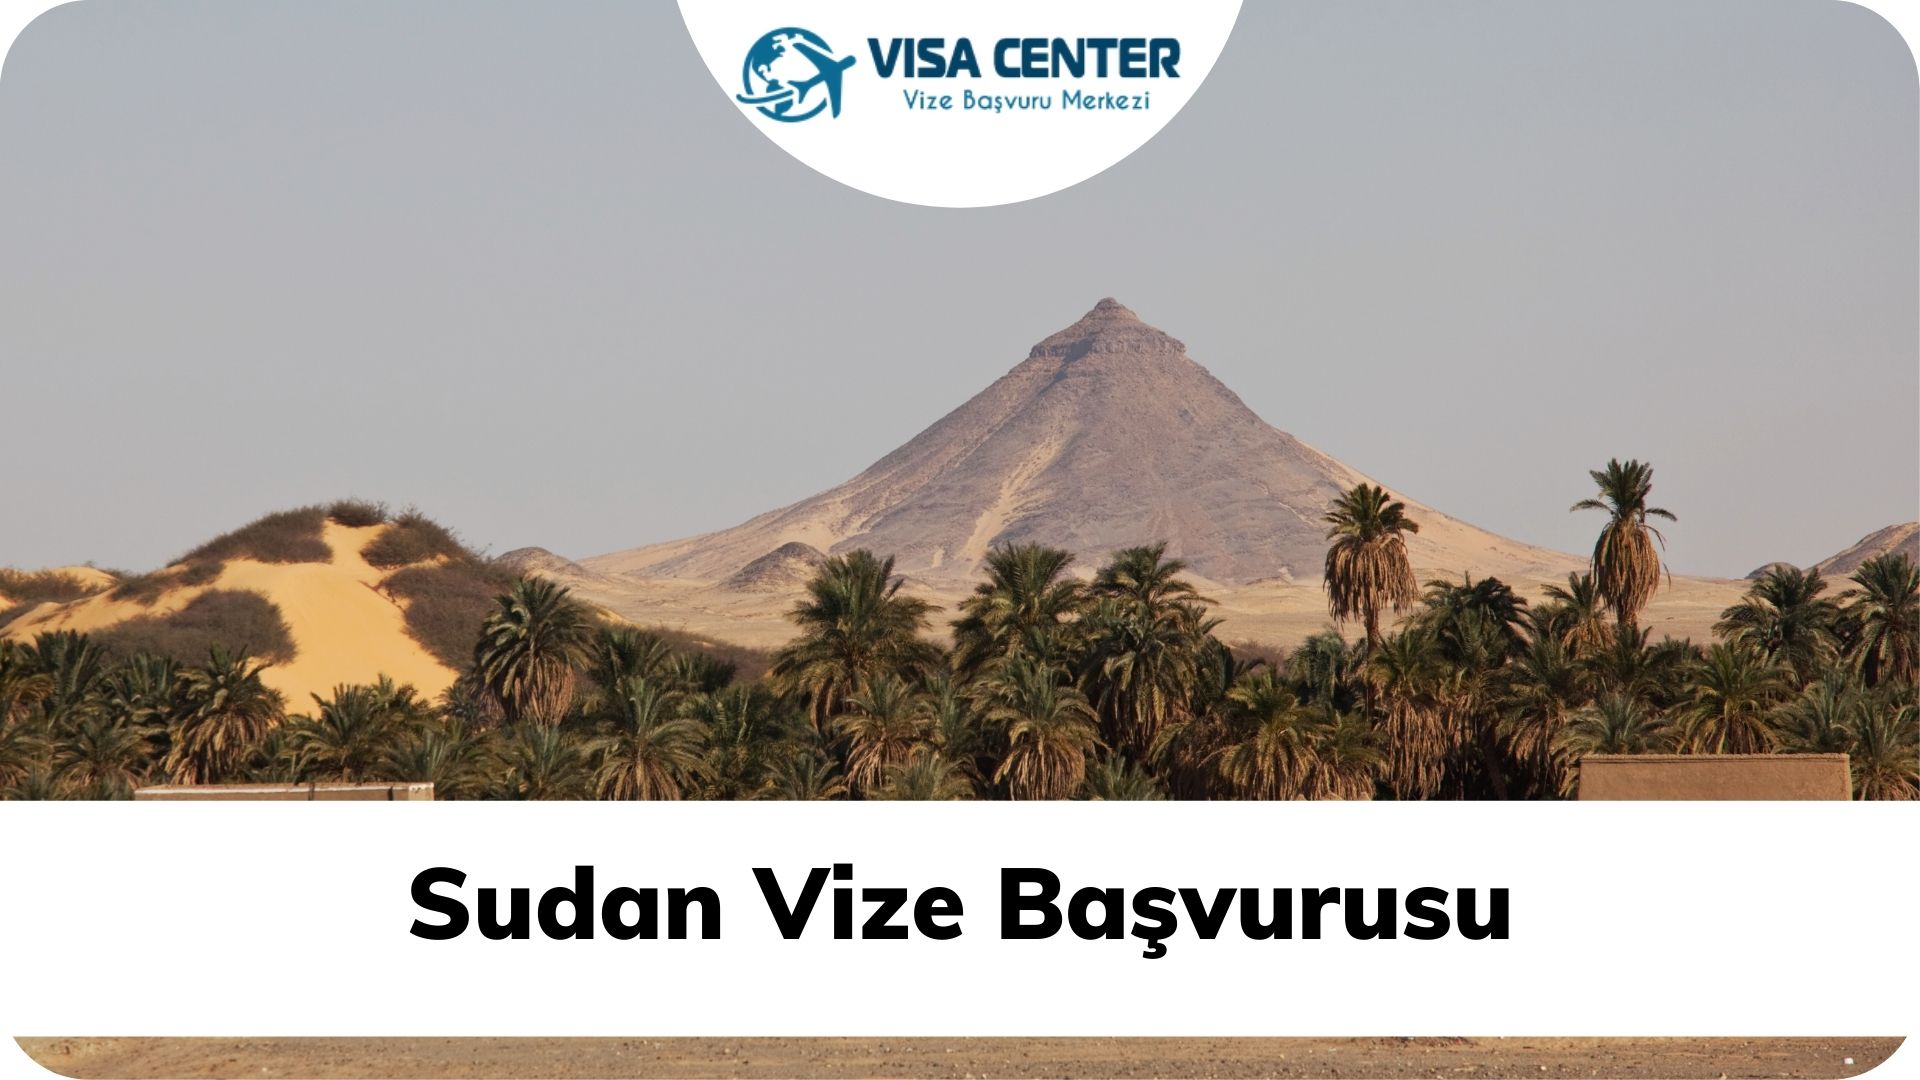 Sudan Vize Başvurusu